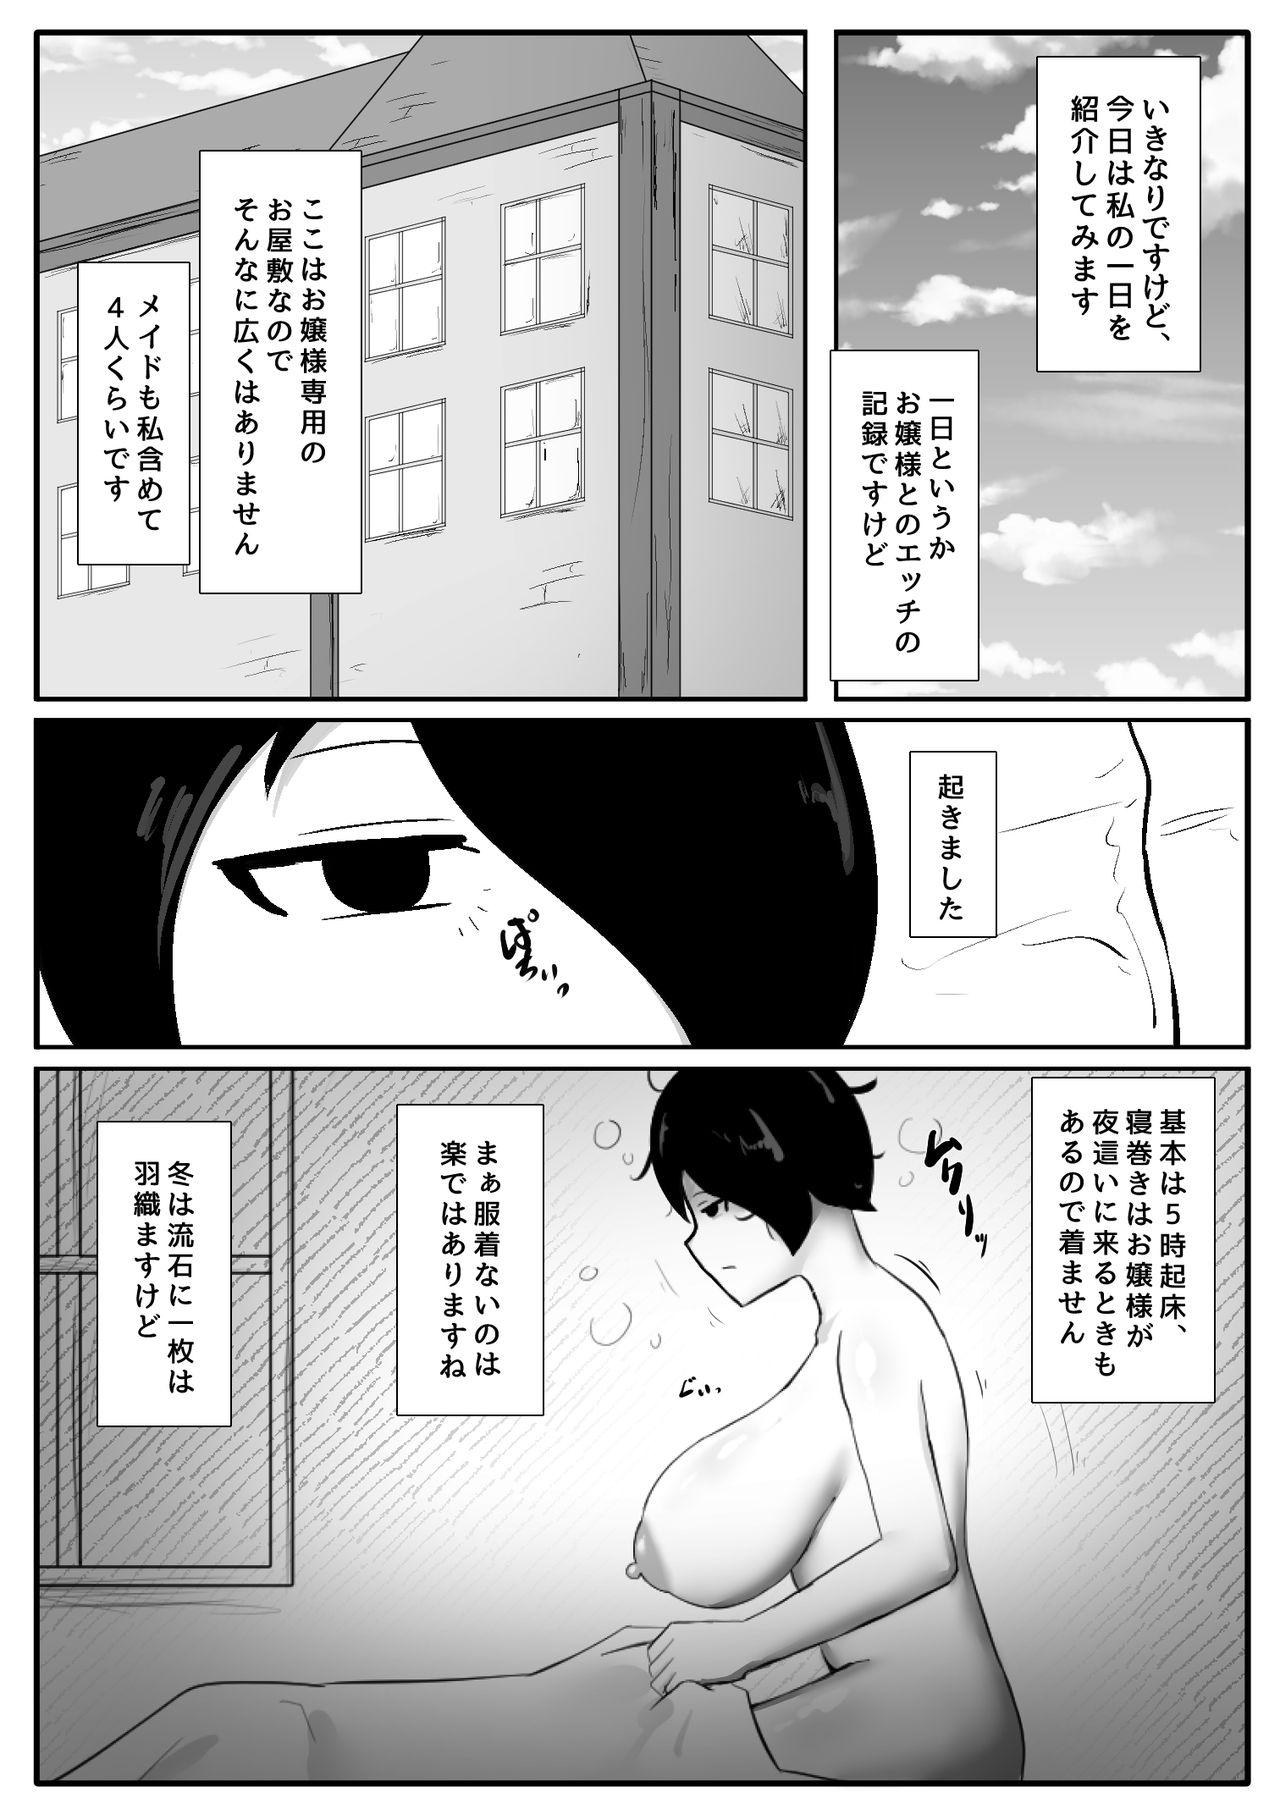 Futa Ojōsama no Asadachi o Muhyōjō Meido ga Sei Shori Suru Manga 1